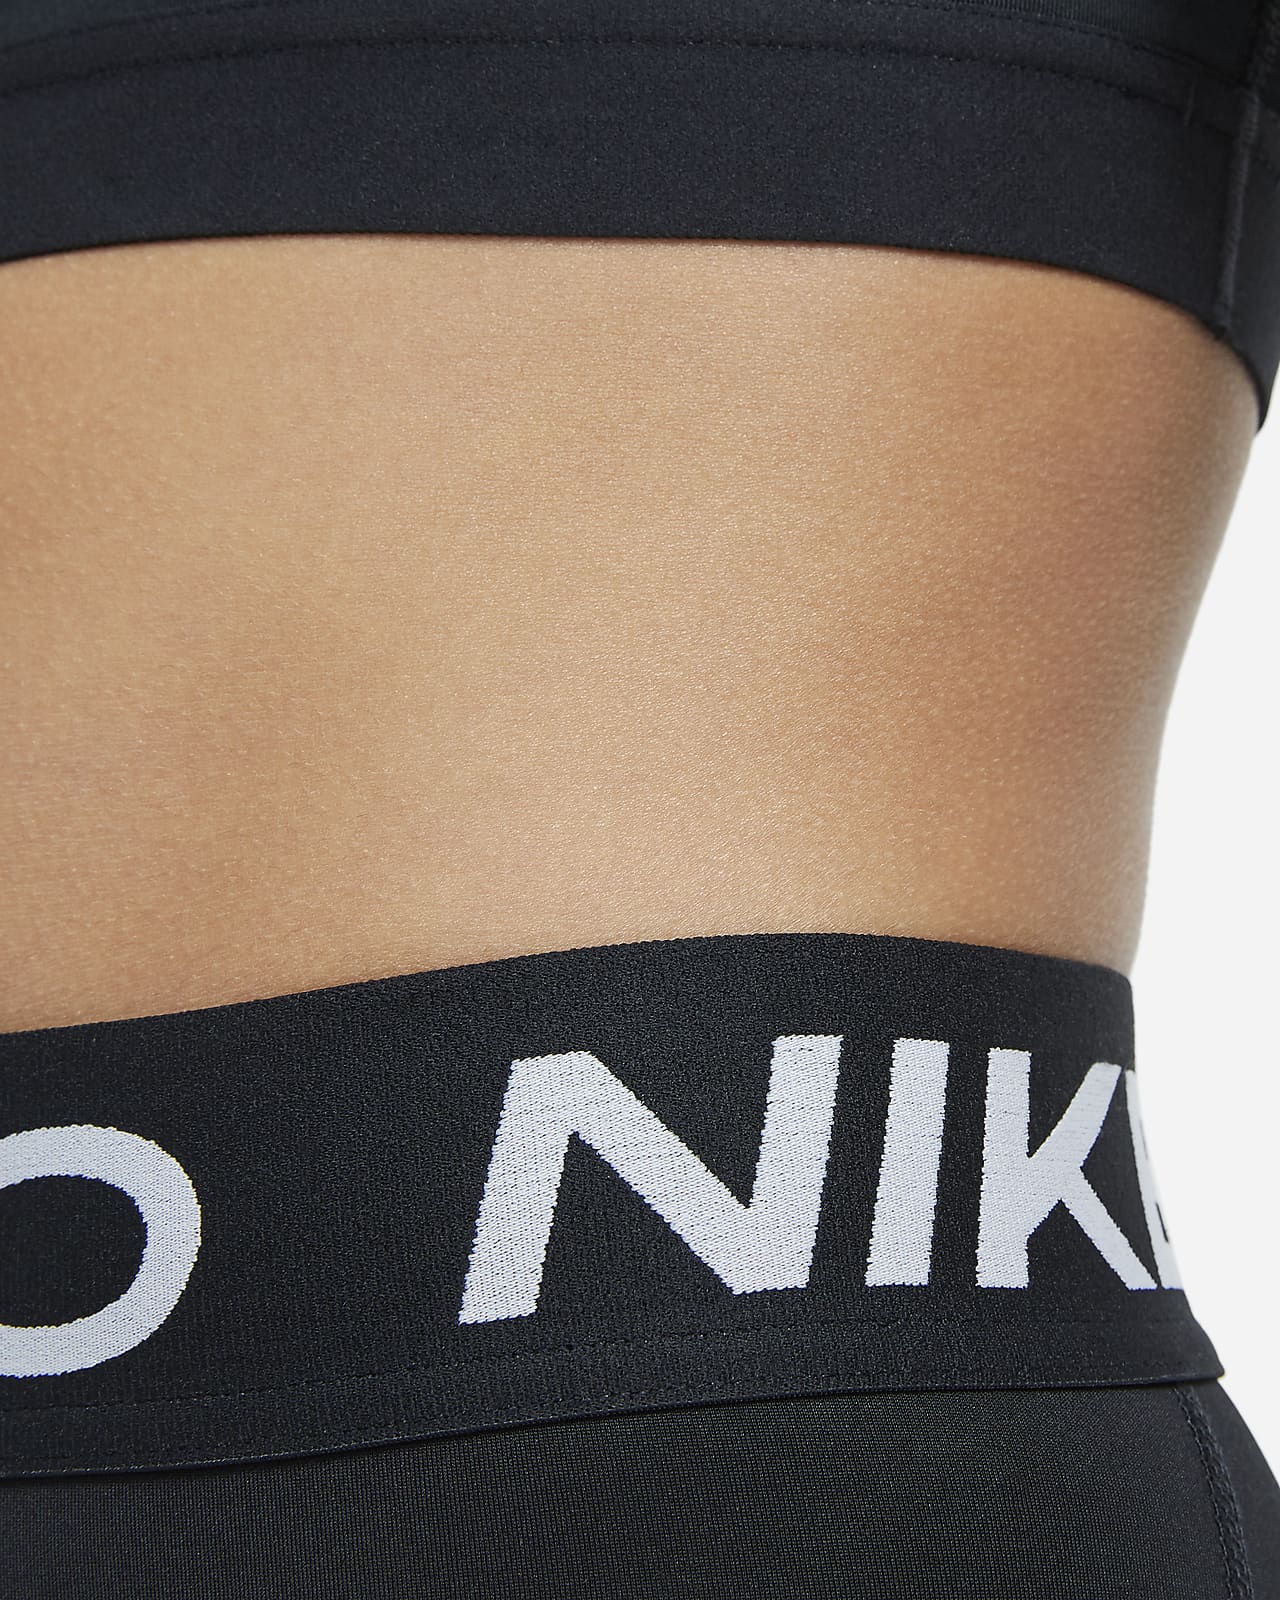 Nike Pro Older Kids' (Girls') Capri Leggings. Nike UK